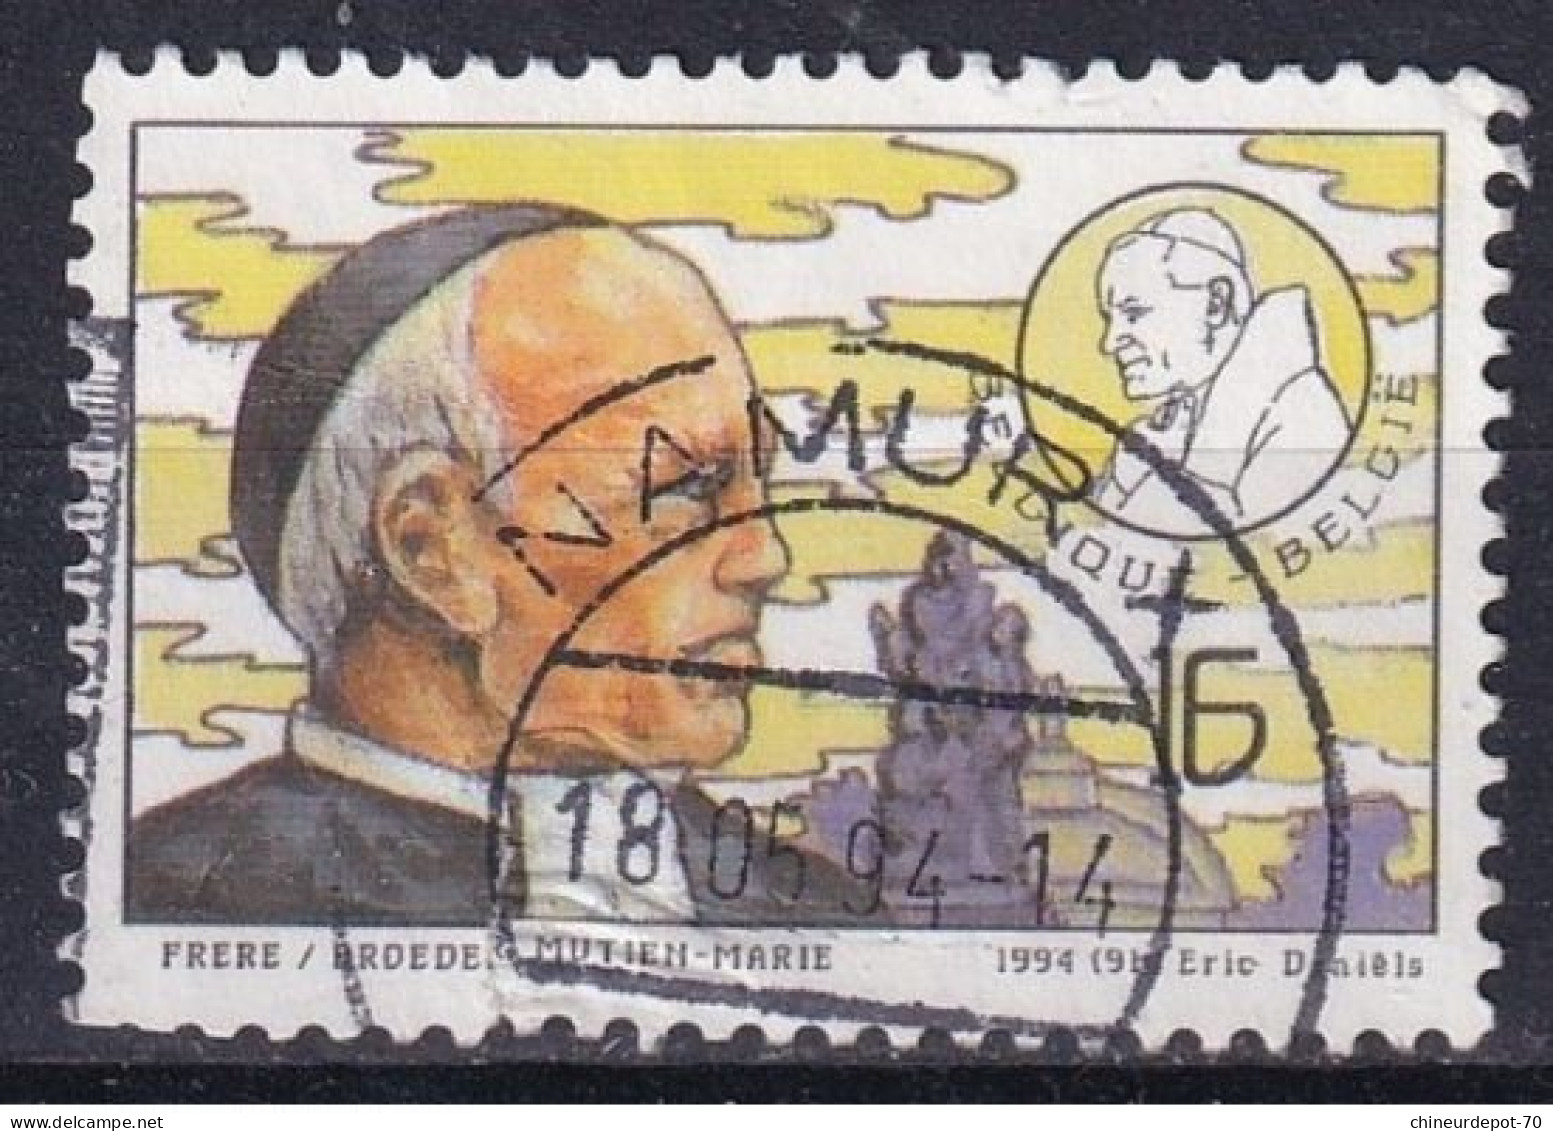 1994 Éric Daniels FRÈRE MUTIEN MARIE  CACHET NAMUR - Used Stamps